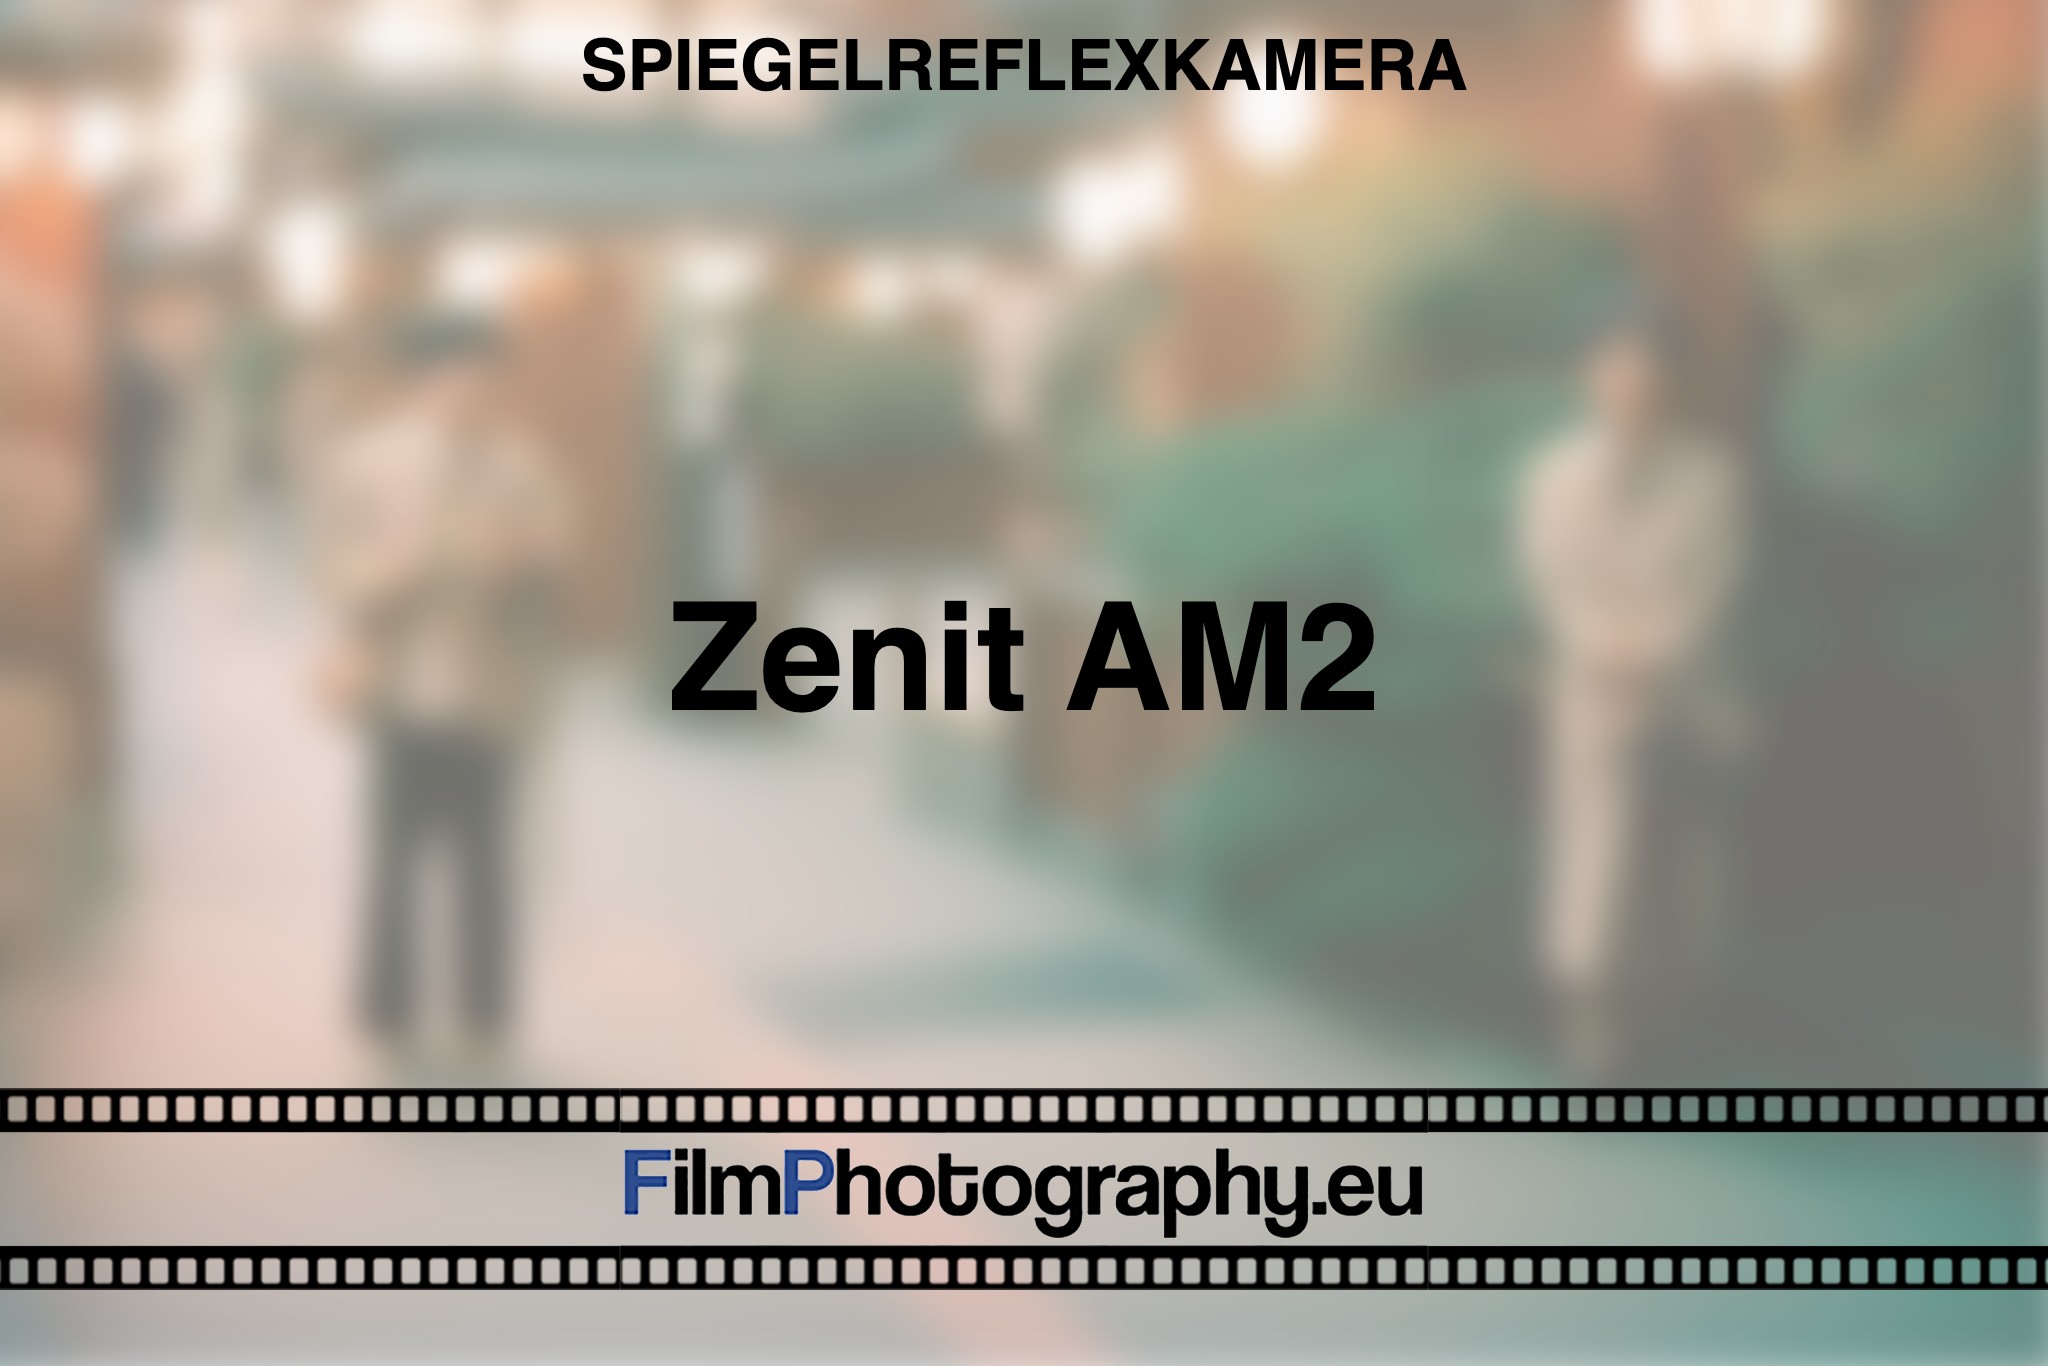 zenit-am2-spiegelreflexkamera-bnv